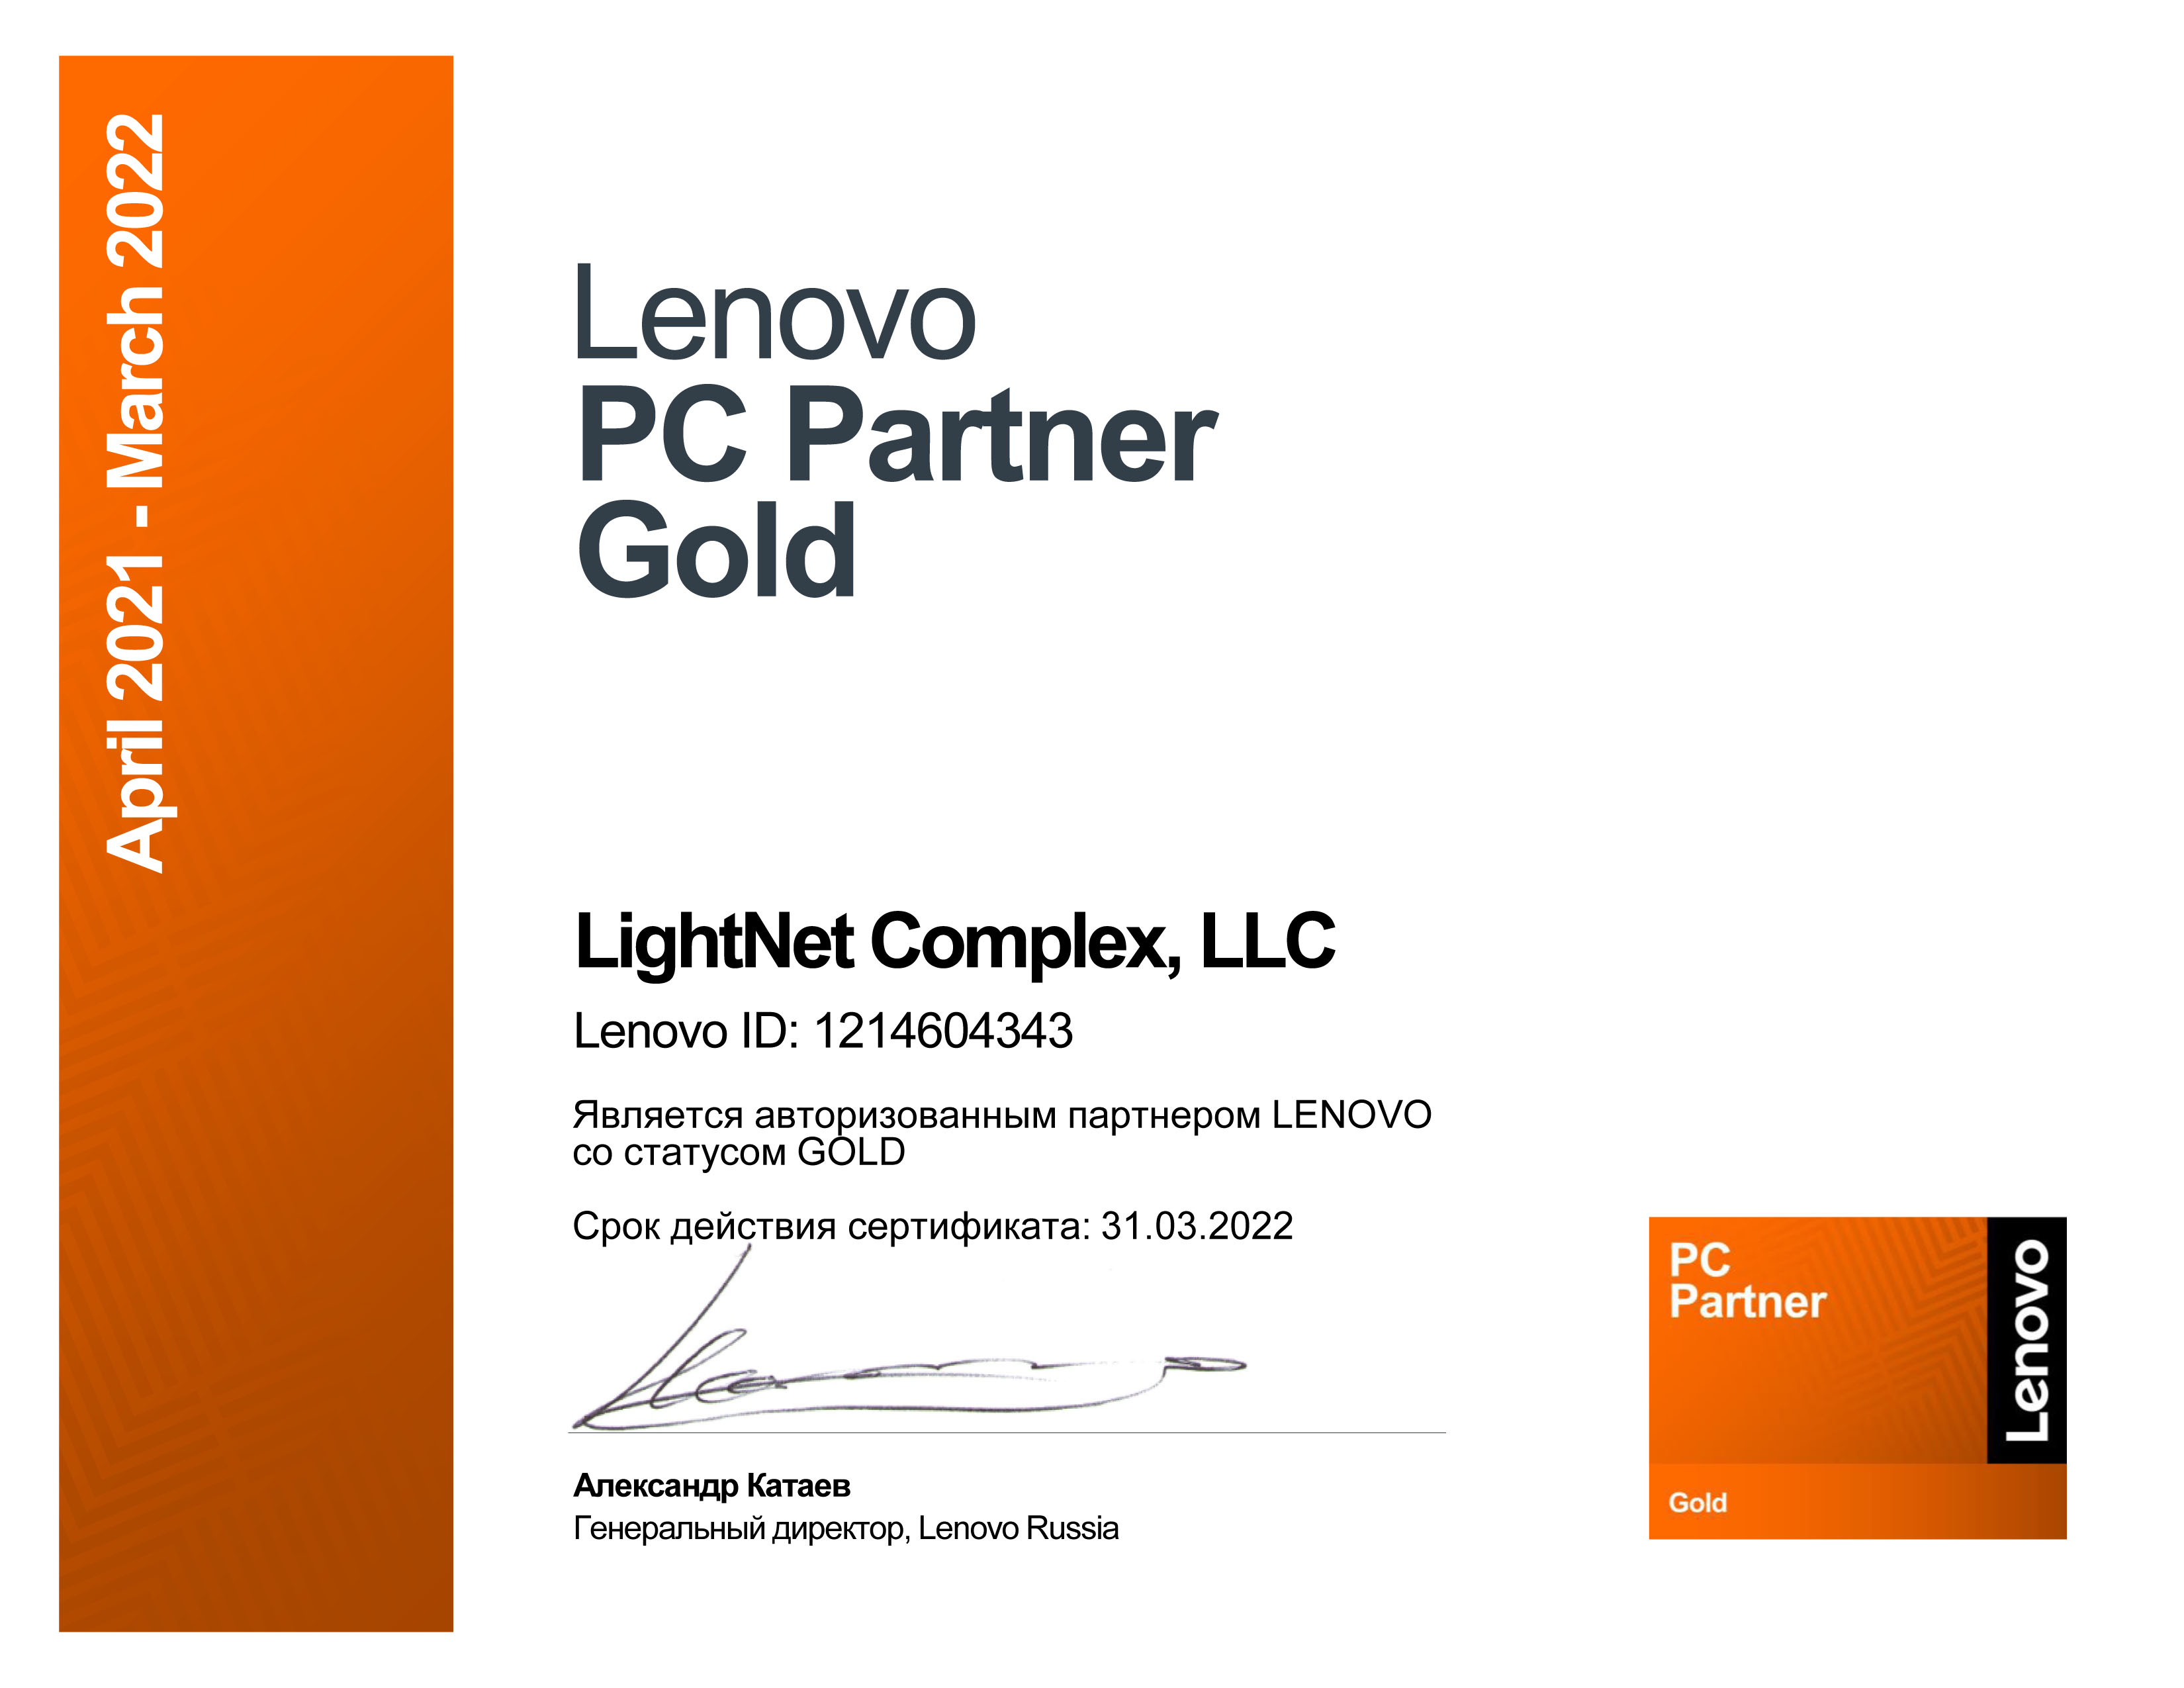 Lenovo - PC Partner Gold